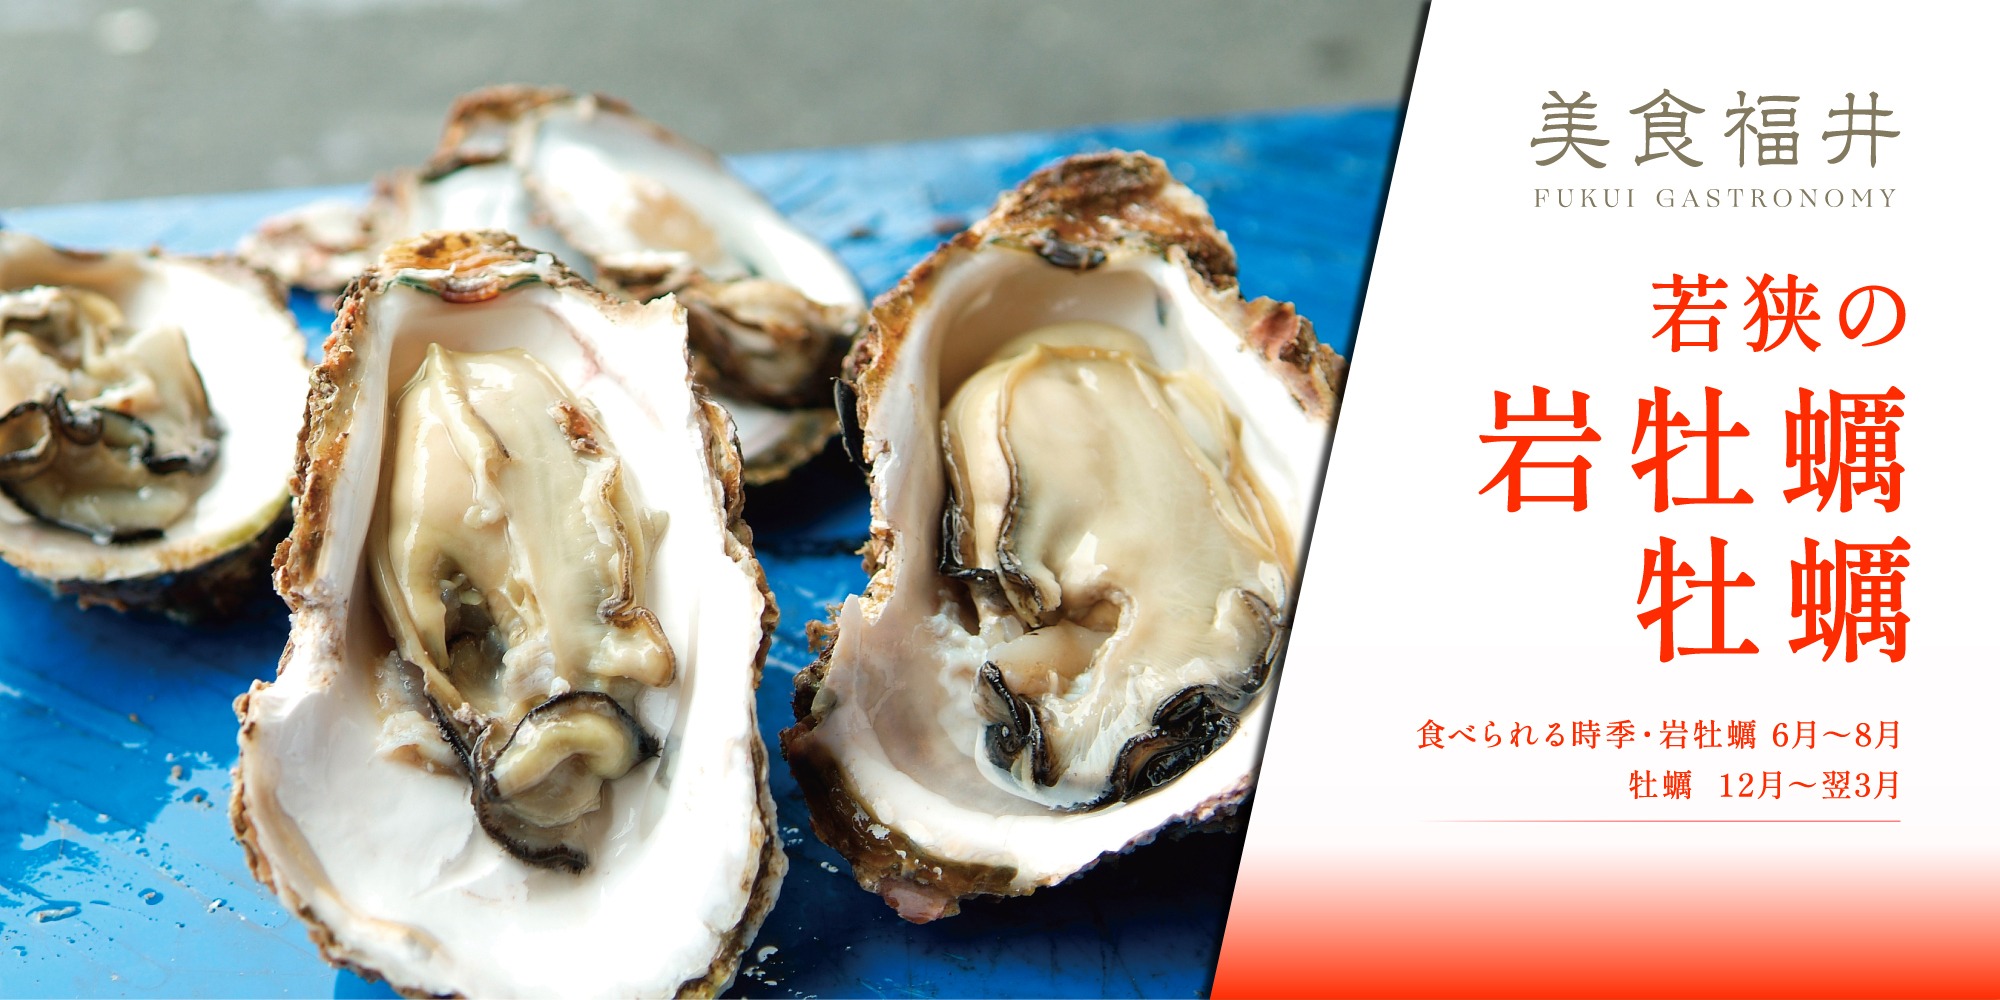 【美食福井】福井の海が育む「岩牡蠣」と「牡蠣」は磯の香りと濃厚な旨味が抜群